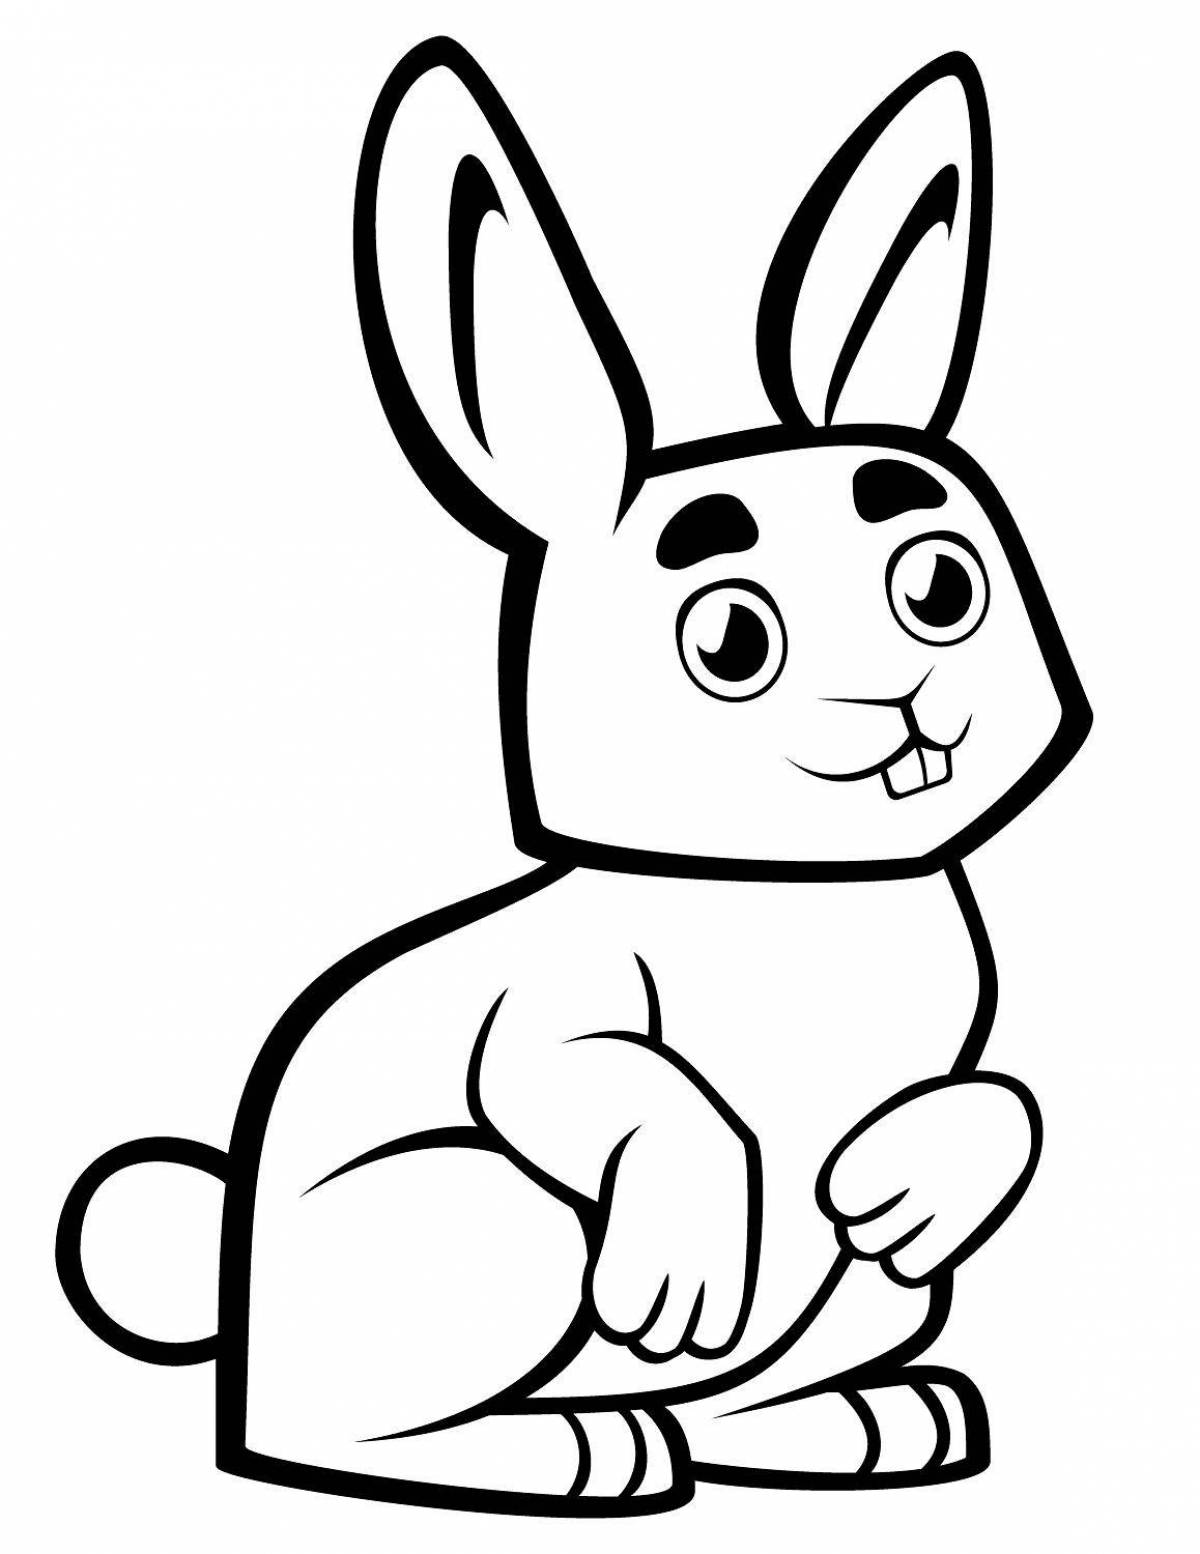 Playful rabbit coloring book